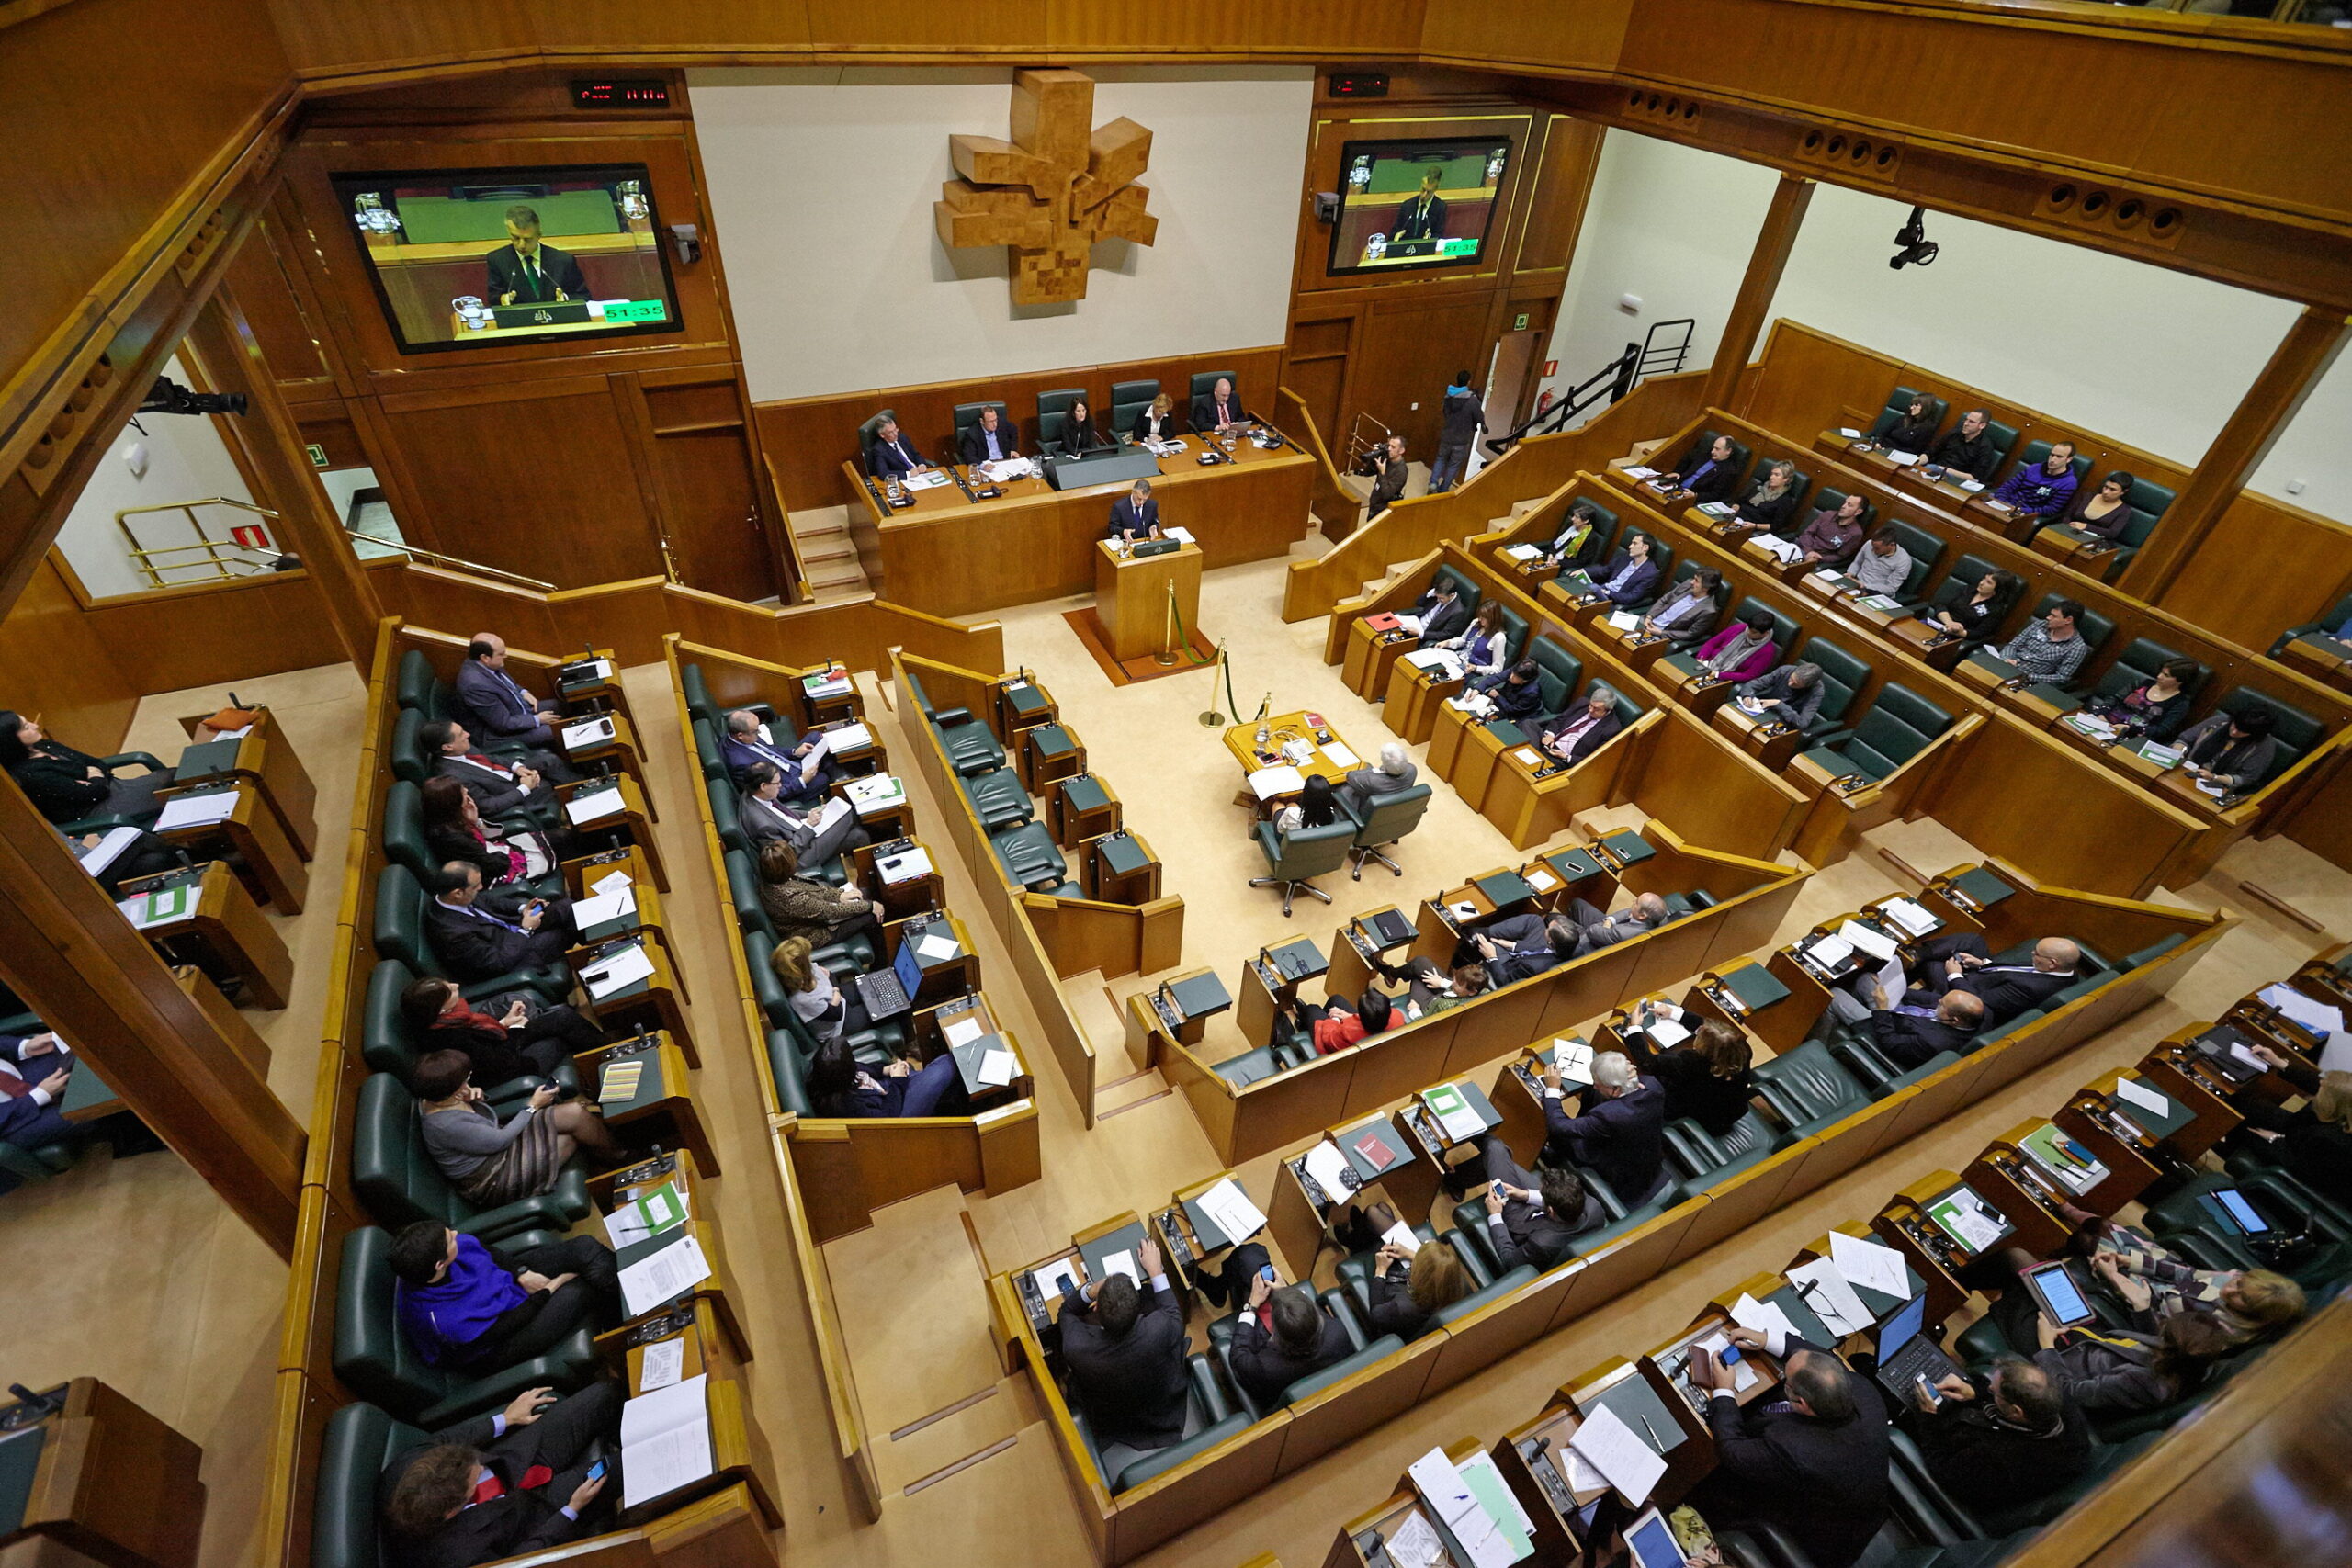 Ισπανία: Διαπραγματεύσεις για την περιφερειακή εξουσία μεταξύ των δύο μεγάλων κομμάτων στο Βασκικό κοινοβούλιο